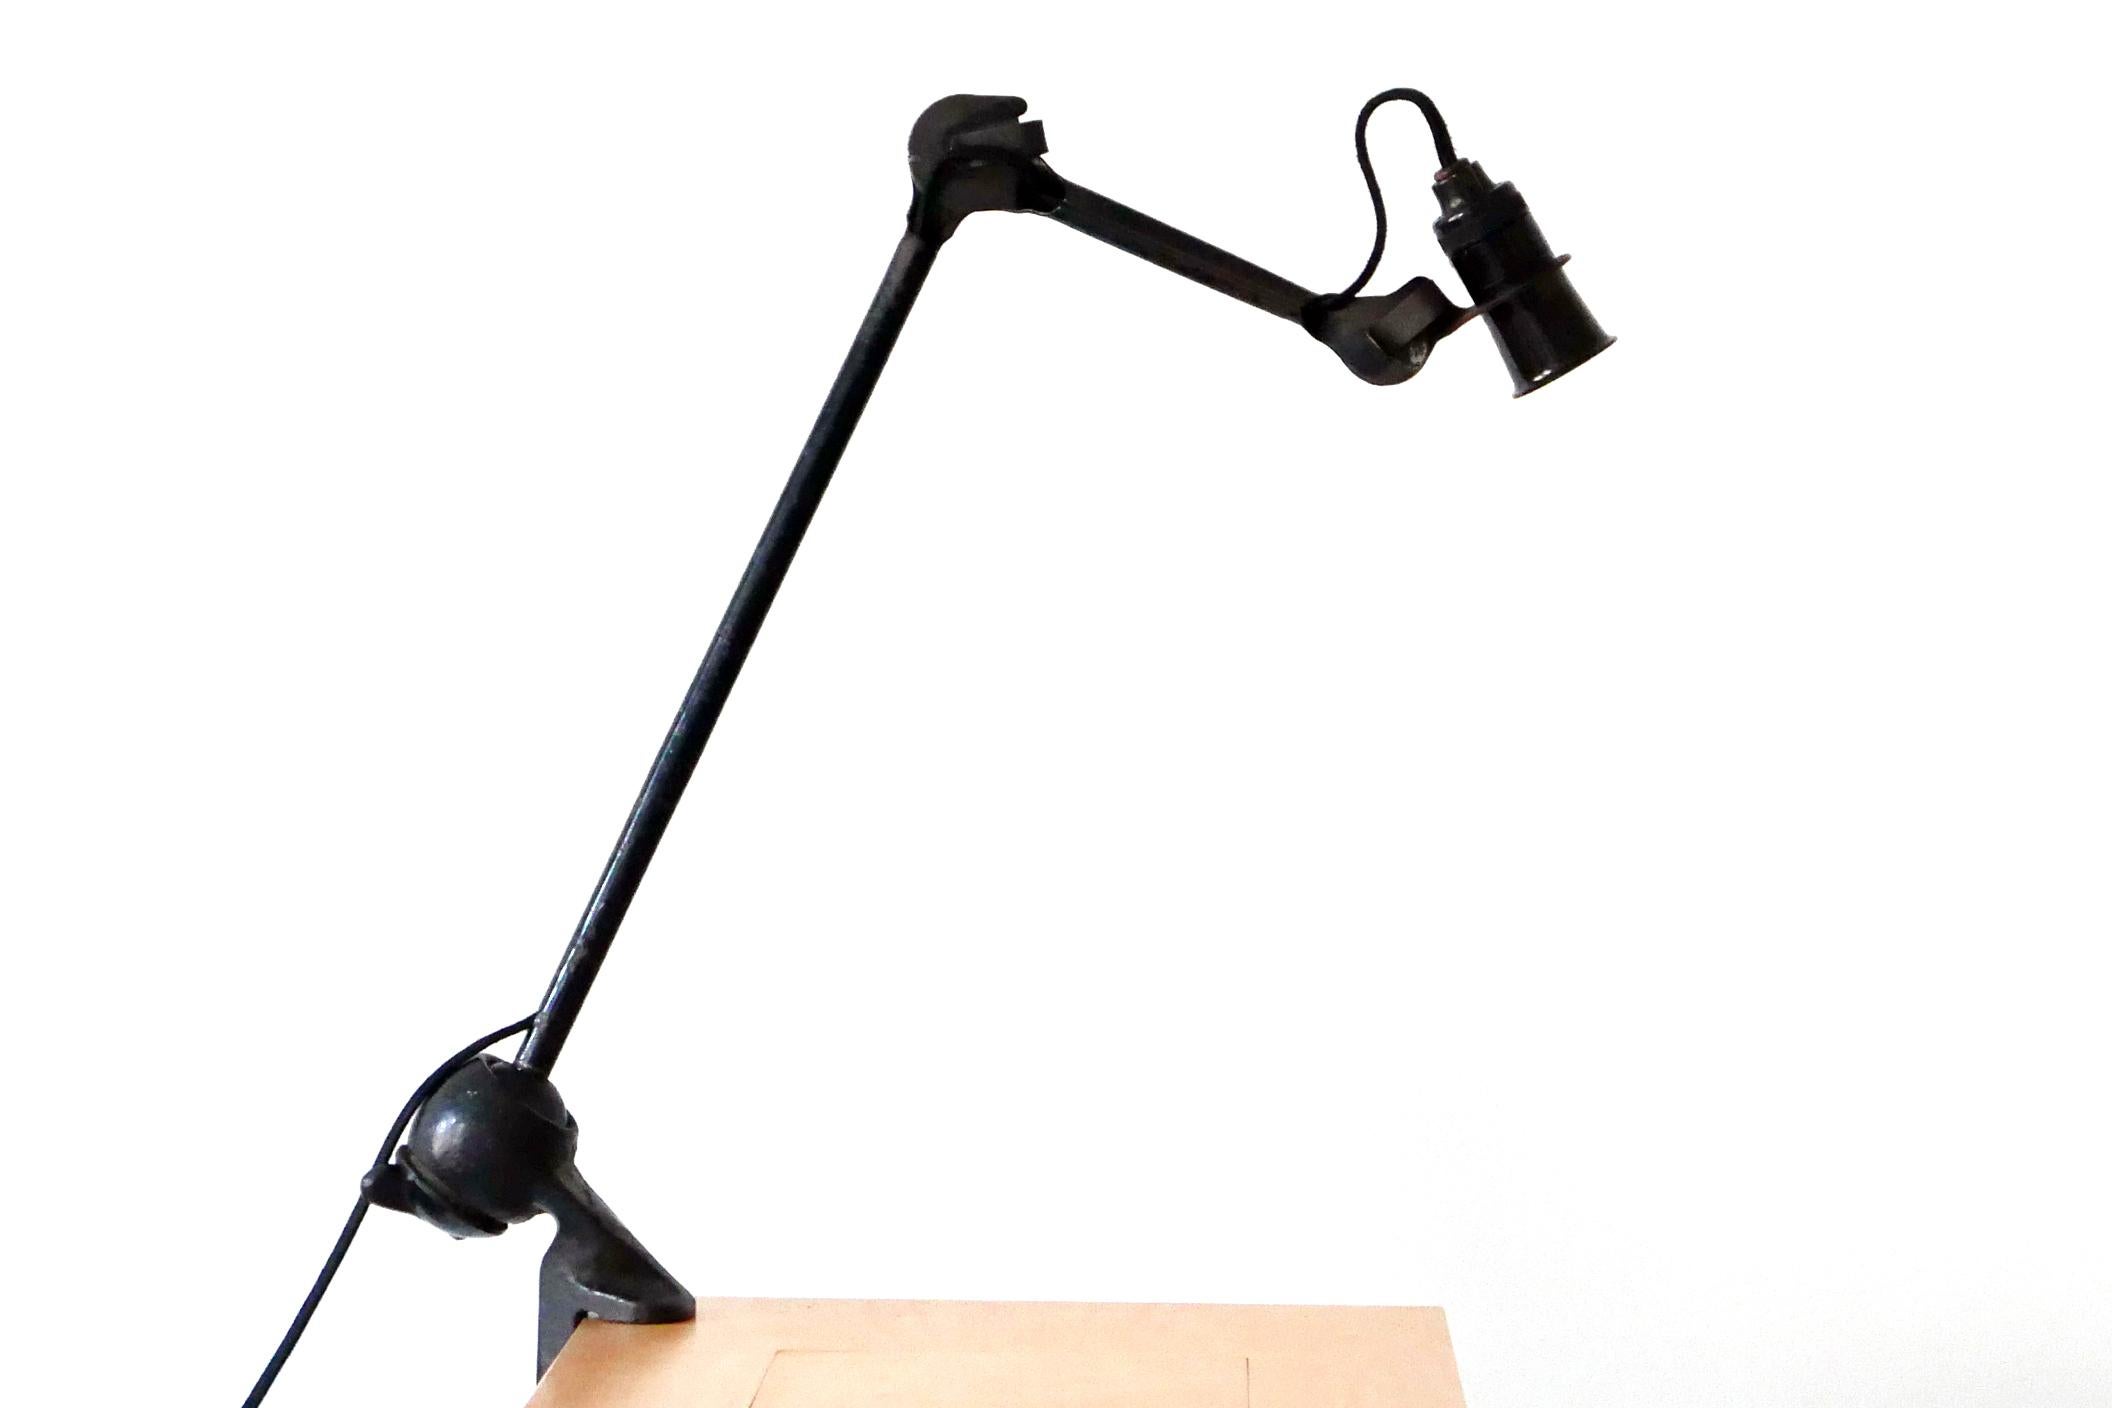 Lampe d'appoint moderniste articulée ou lampe de table à pince. Extrêmement rare exécution plus courte du modèle 201. Conçu dans les années 1920 par Bernard-Albin Gras. Fabriqué dans les années 1920 par Gras, France, années 1920.

Réalisée en acier